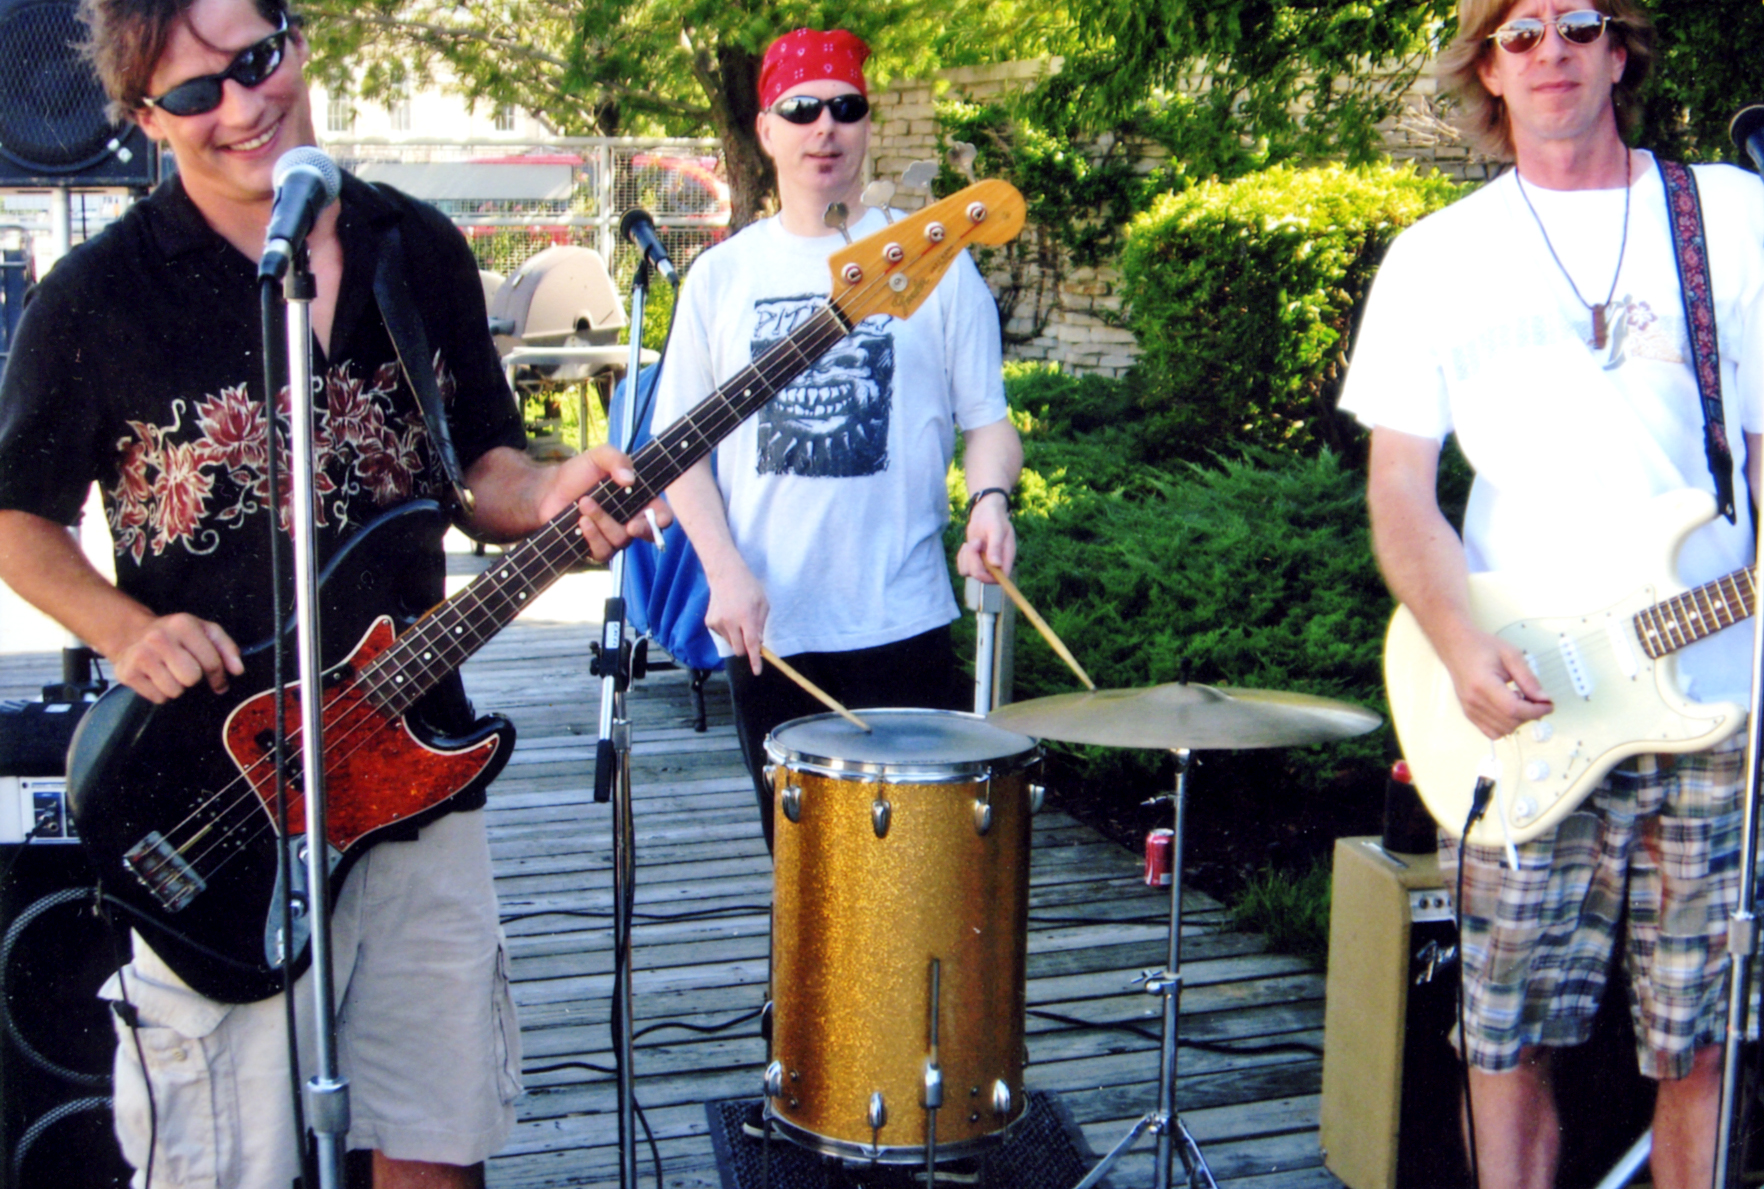 Band playing at dock